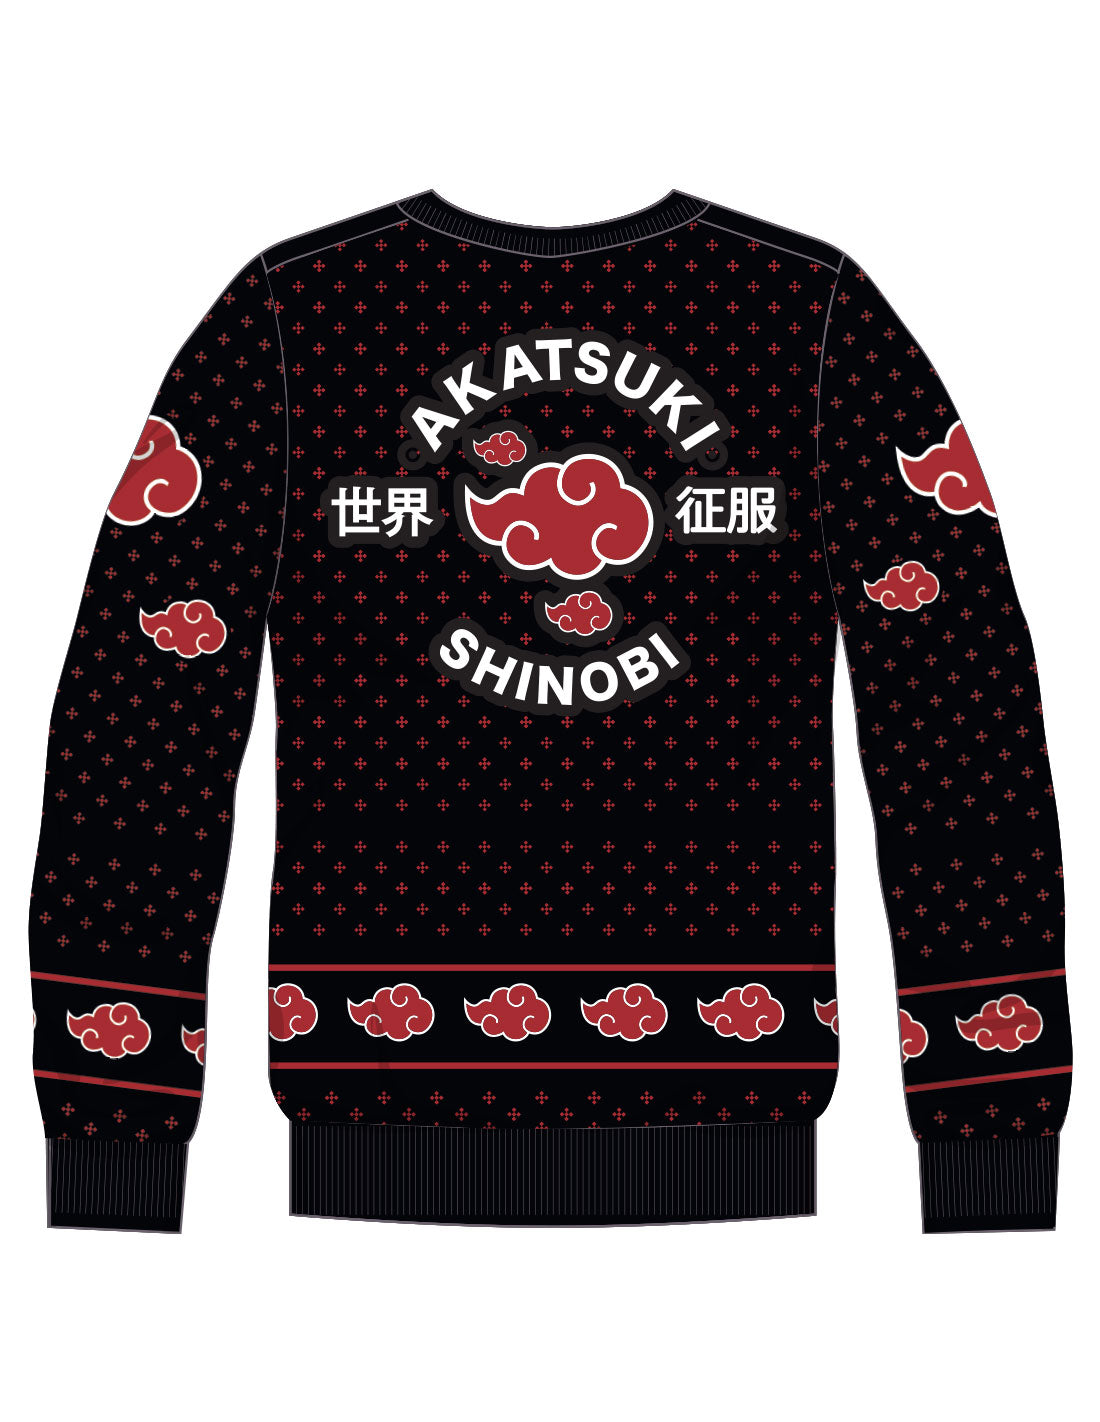 Naruto sweater - Akatsuki Shinobi 